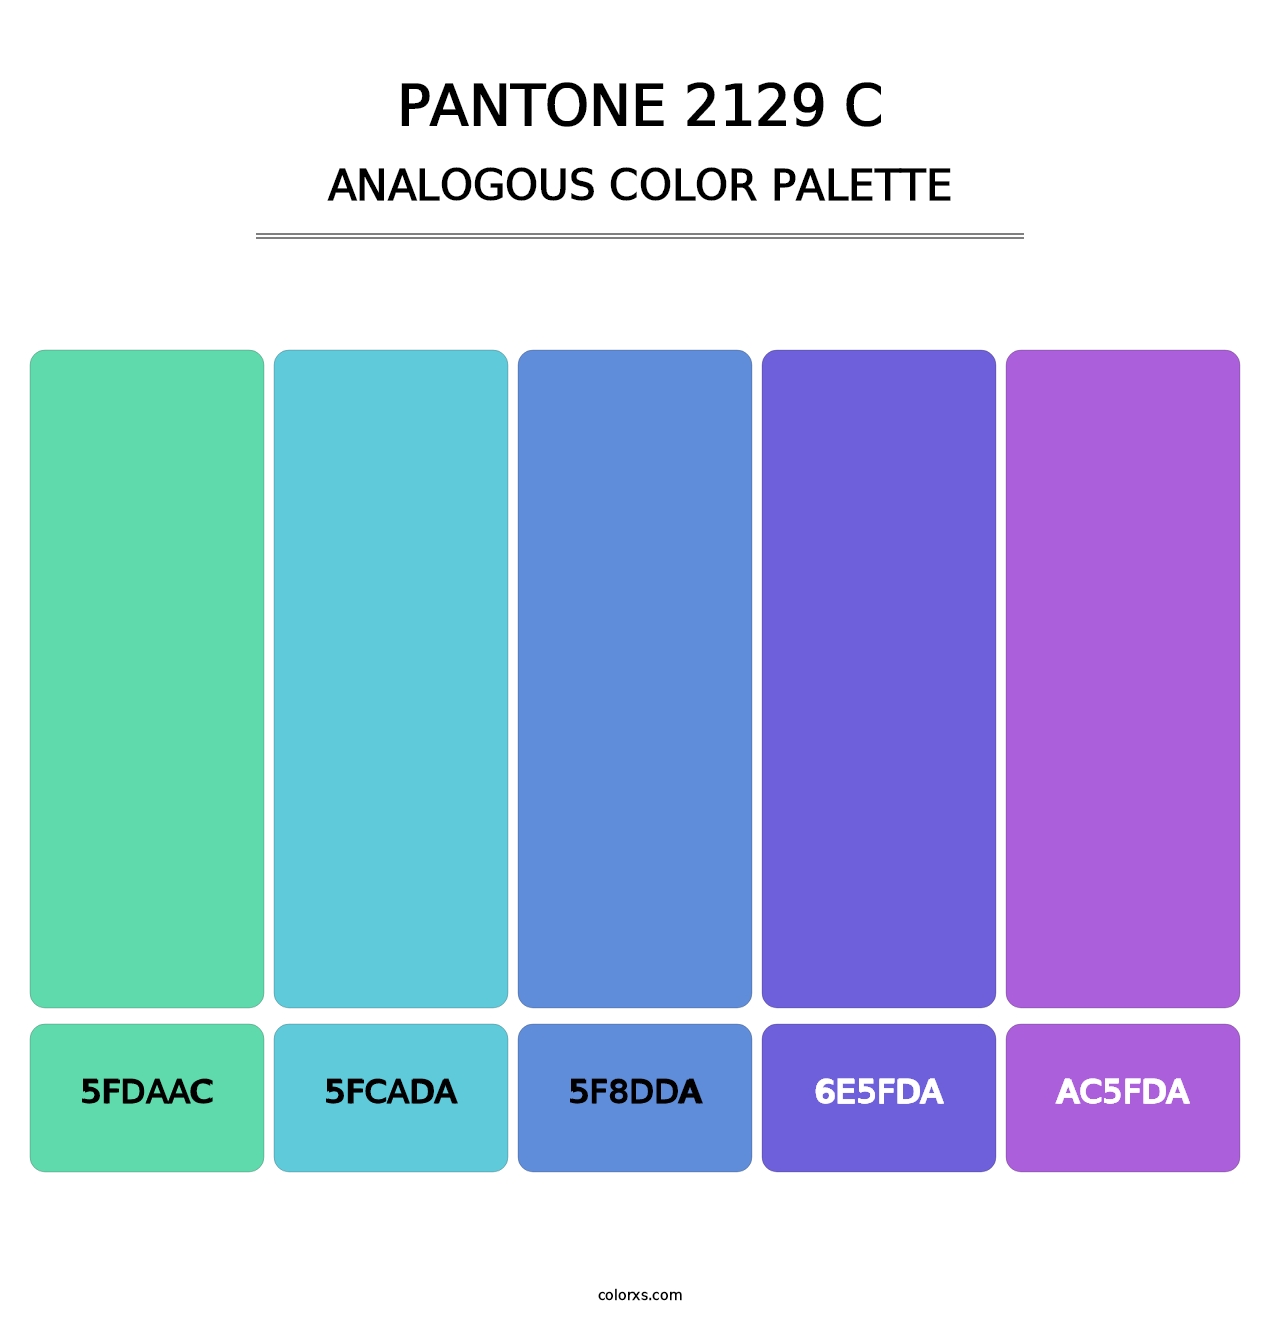 PANTONE 2129 C - Analogous Color Palette